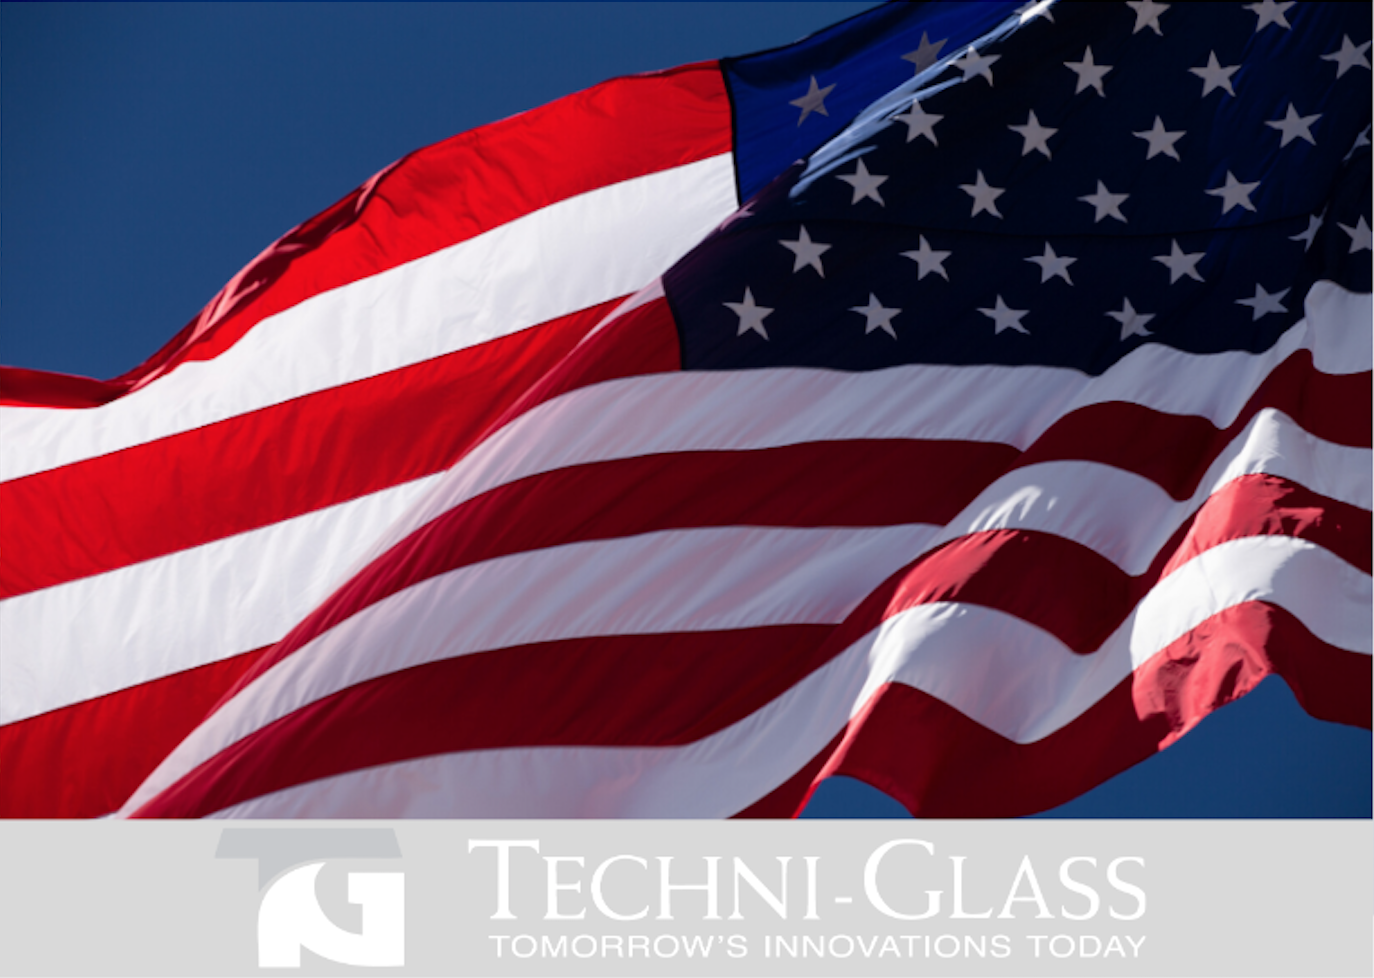 Techni-Glass – Made In America